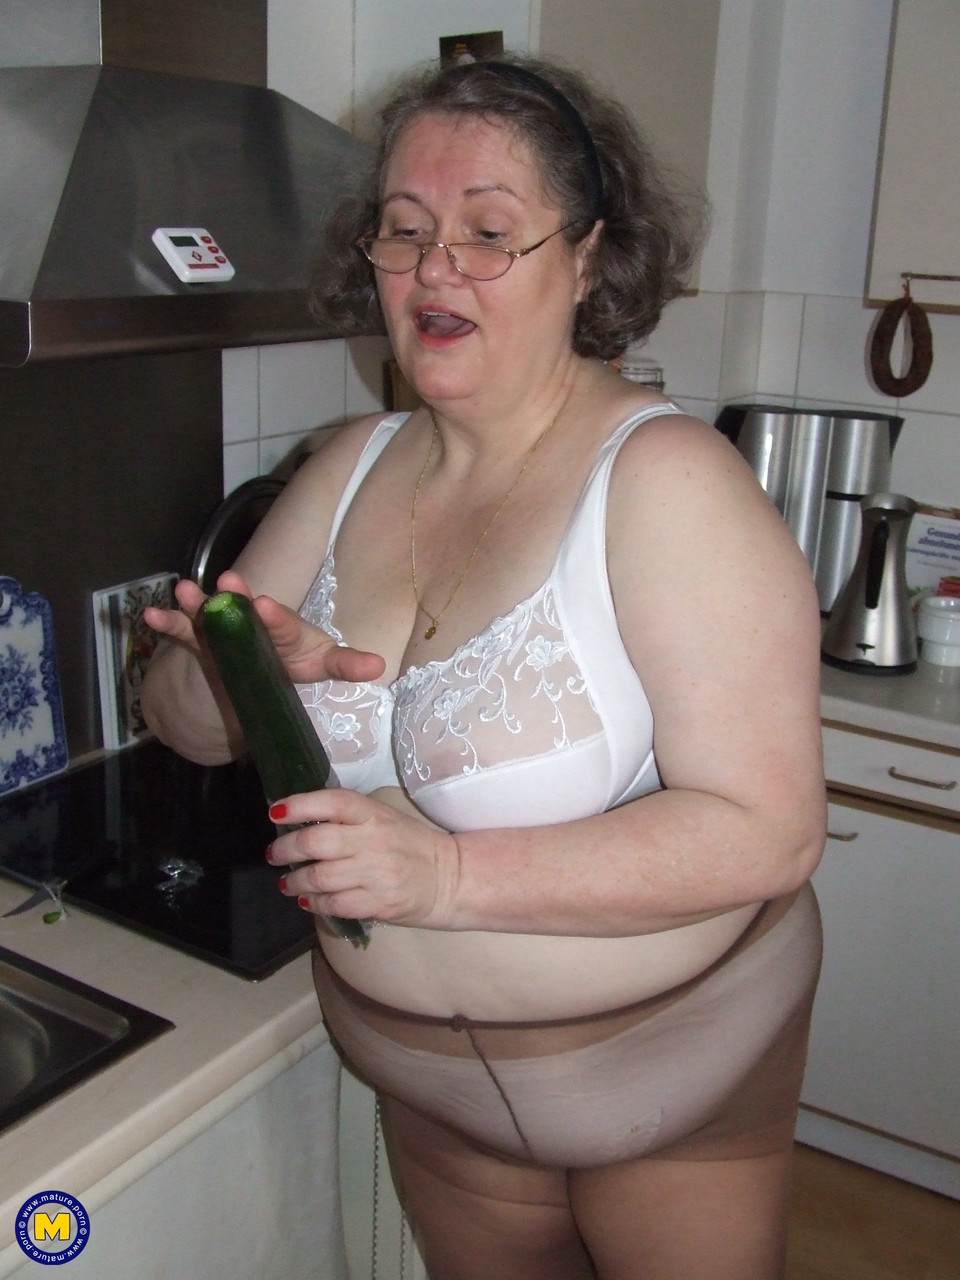 Fat mature housewife Birgid masturbates with a cucumber in the kitchen foto porno #423883219 | Mature NL Pics, Birgid, Granny, porno ponsel